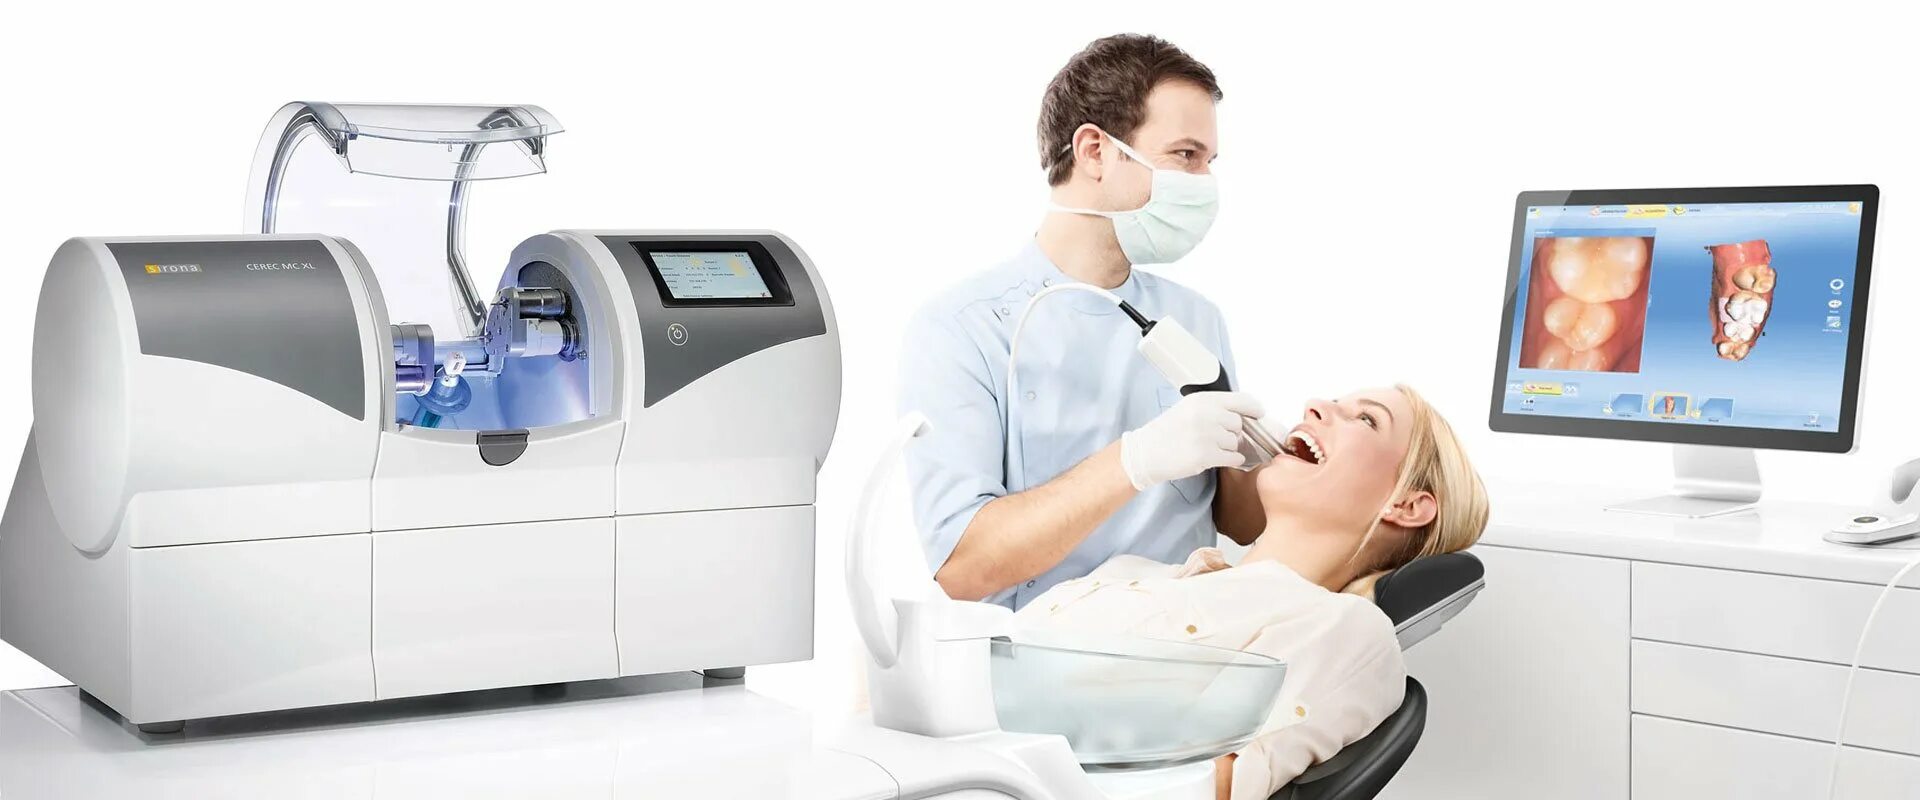 CAD cam технологии в ортопедической стоматологии. Технология церек в стоматологии. КАД Кам системы в стоматологии. Церек 3. Ис кам